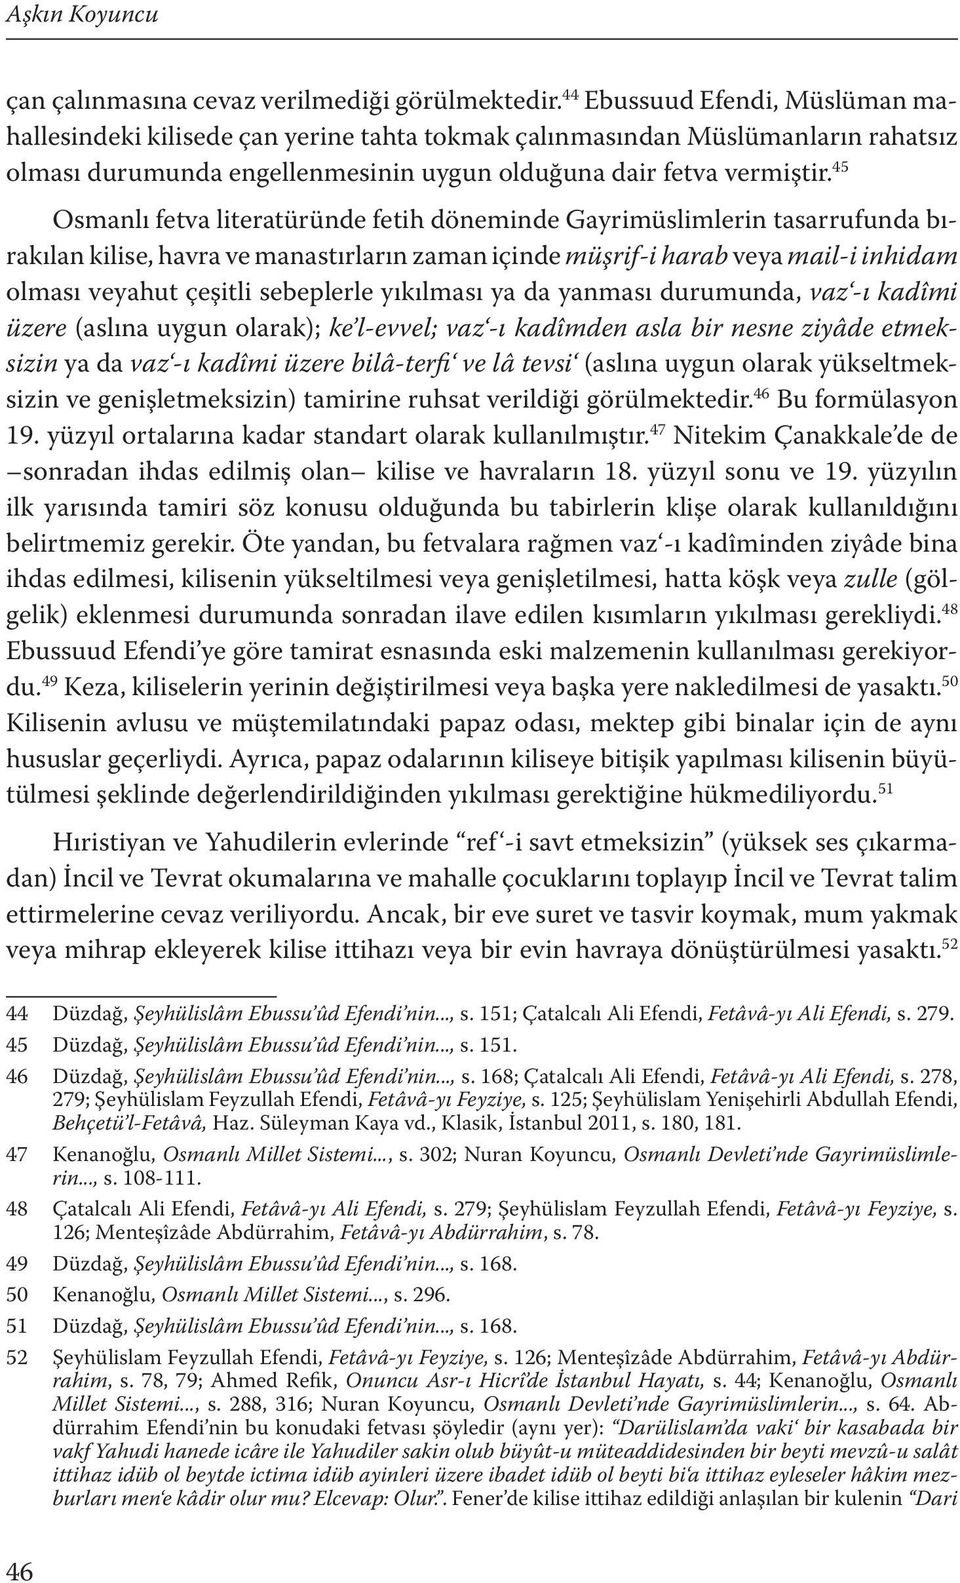 45 Osmanlı fetva literatüründe fetih döneminde Gayrimüslimlerin tasarrufunda bırakılan kilise, havra ve manastırların zaman içinde müşrif-i harab veya mail-i inhidam olması veyahut çeşitli sebeplerle